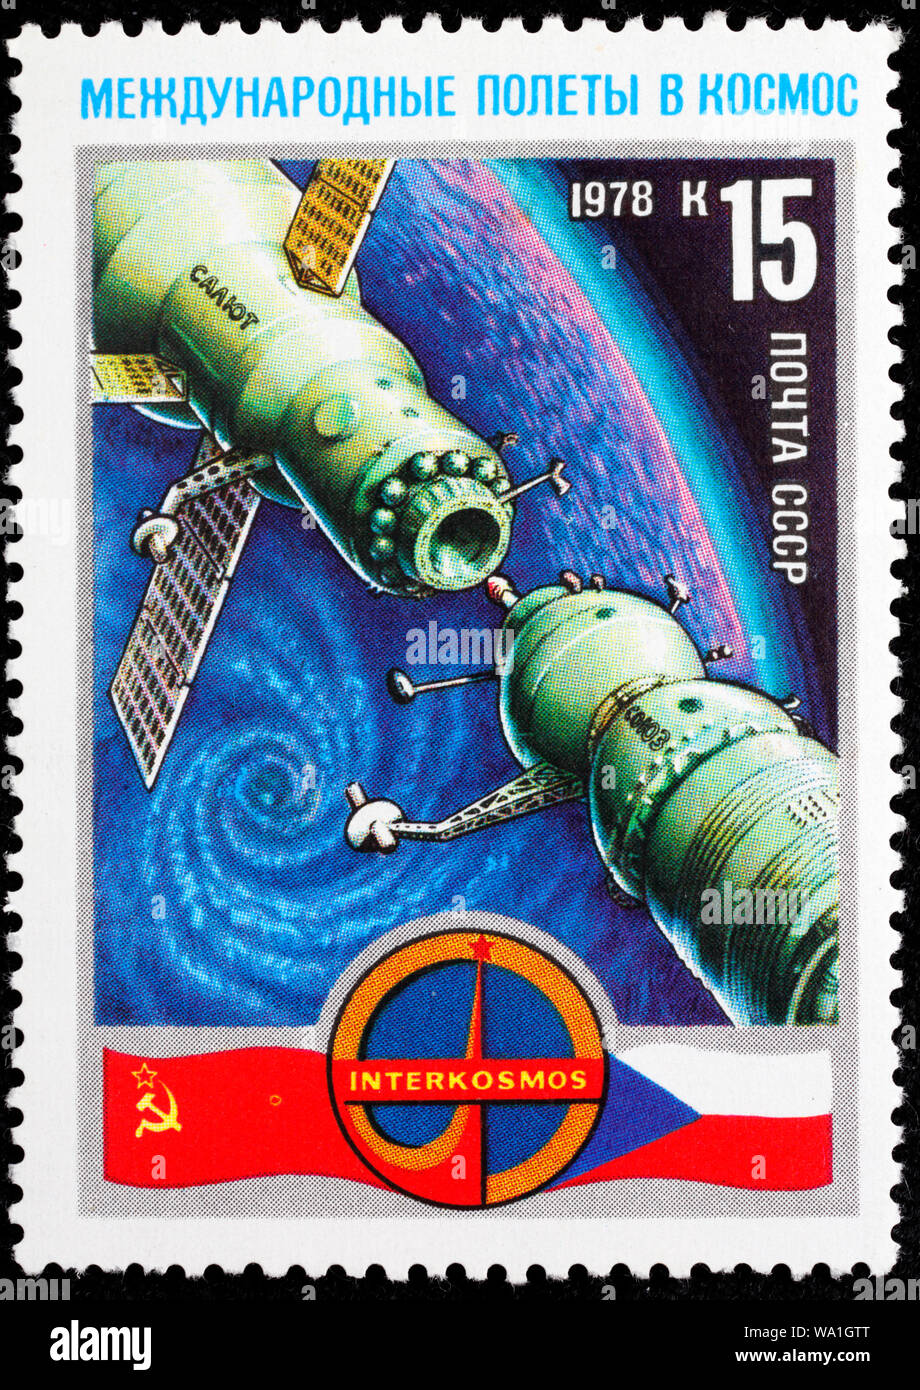 Intercosmos programma spaziale, Soviet-Czech volo spaziale, francobollo, Russia, URSS, 1978 Foto Stock